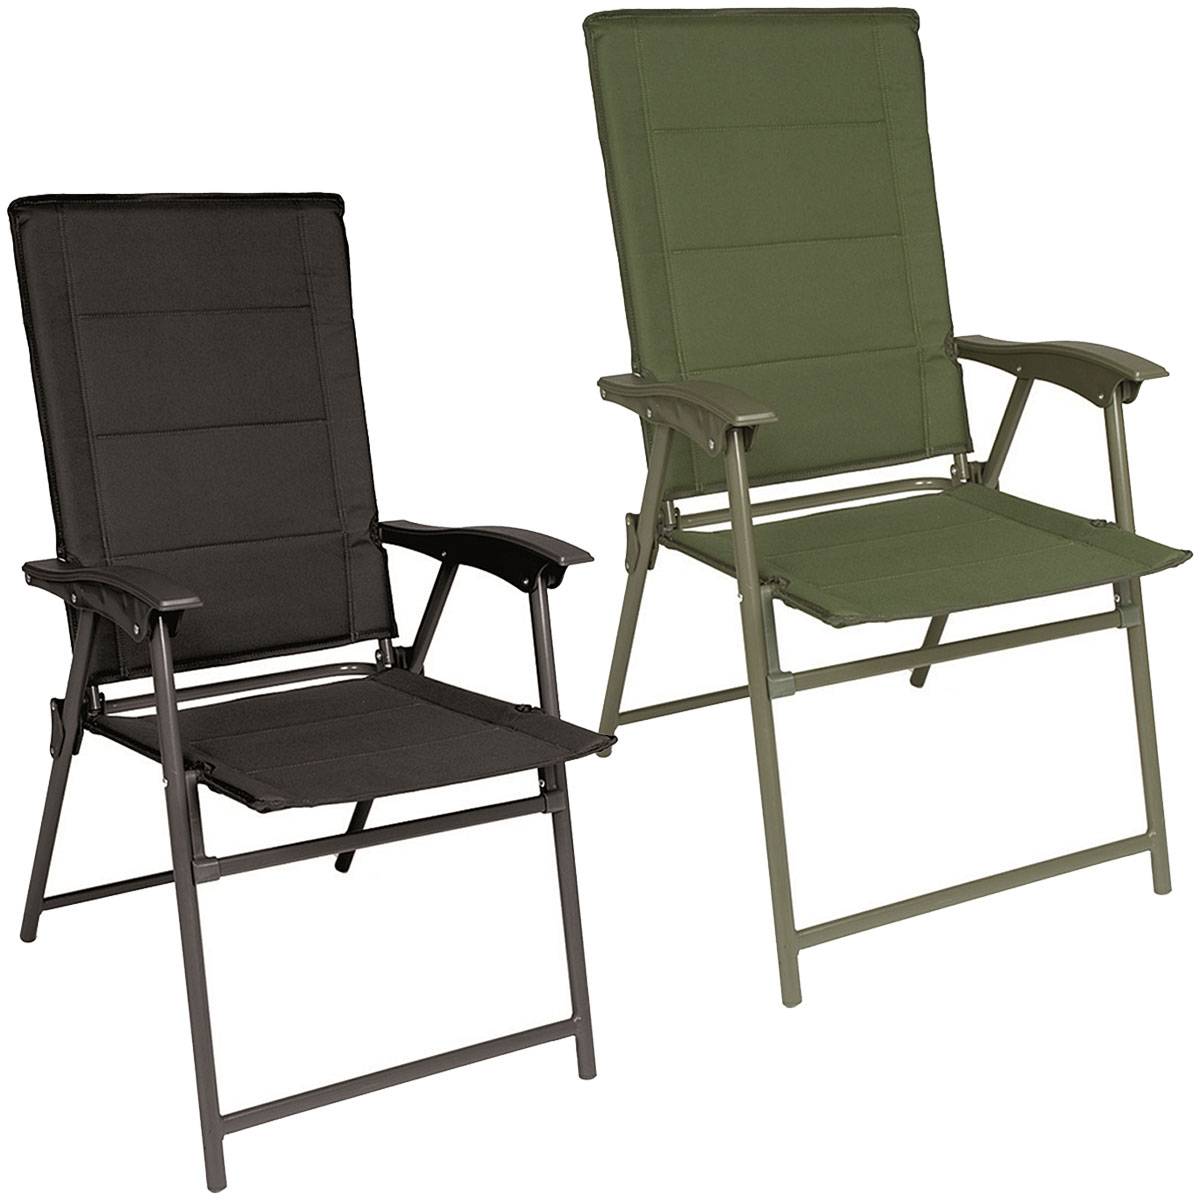 Klappstuhl mit Lehne Army chair Freizeit Outdoor Camping Stuhl OLIV